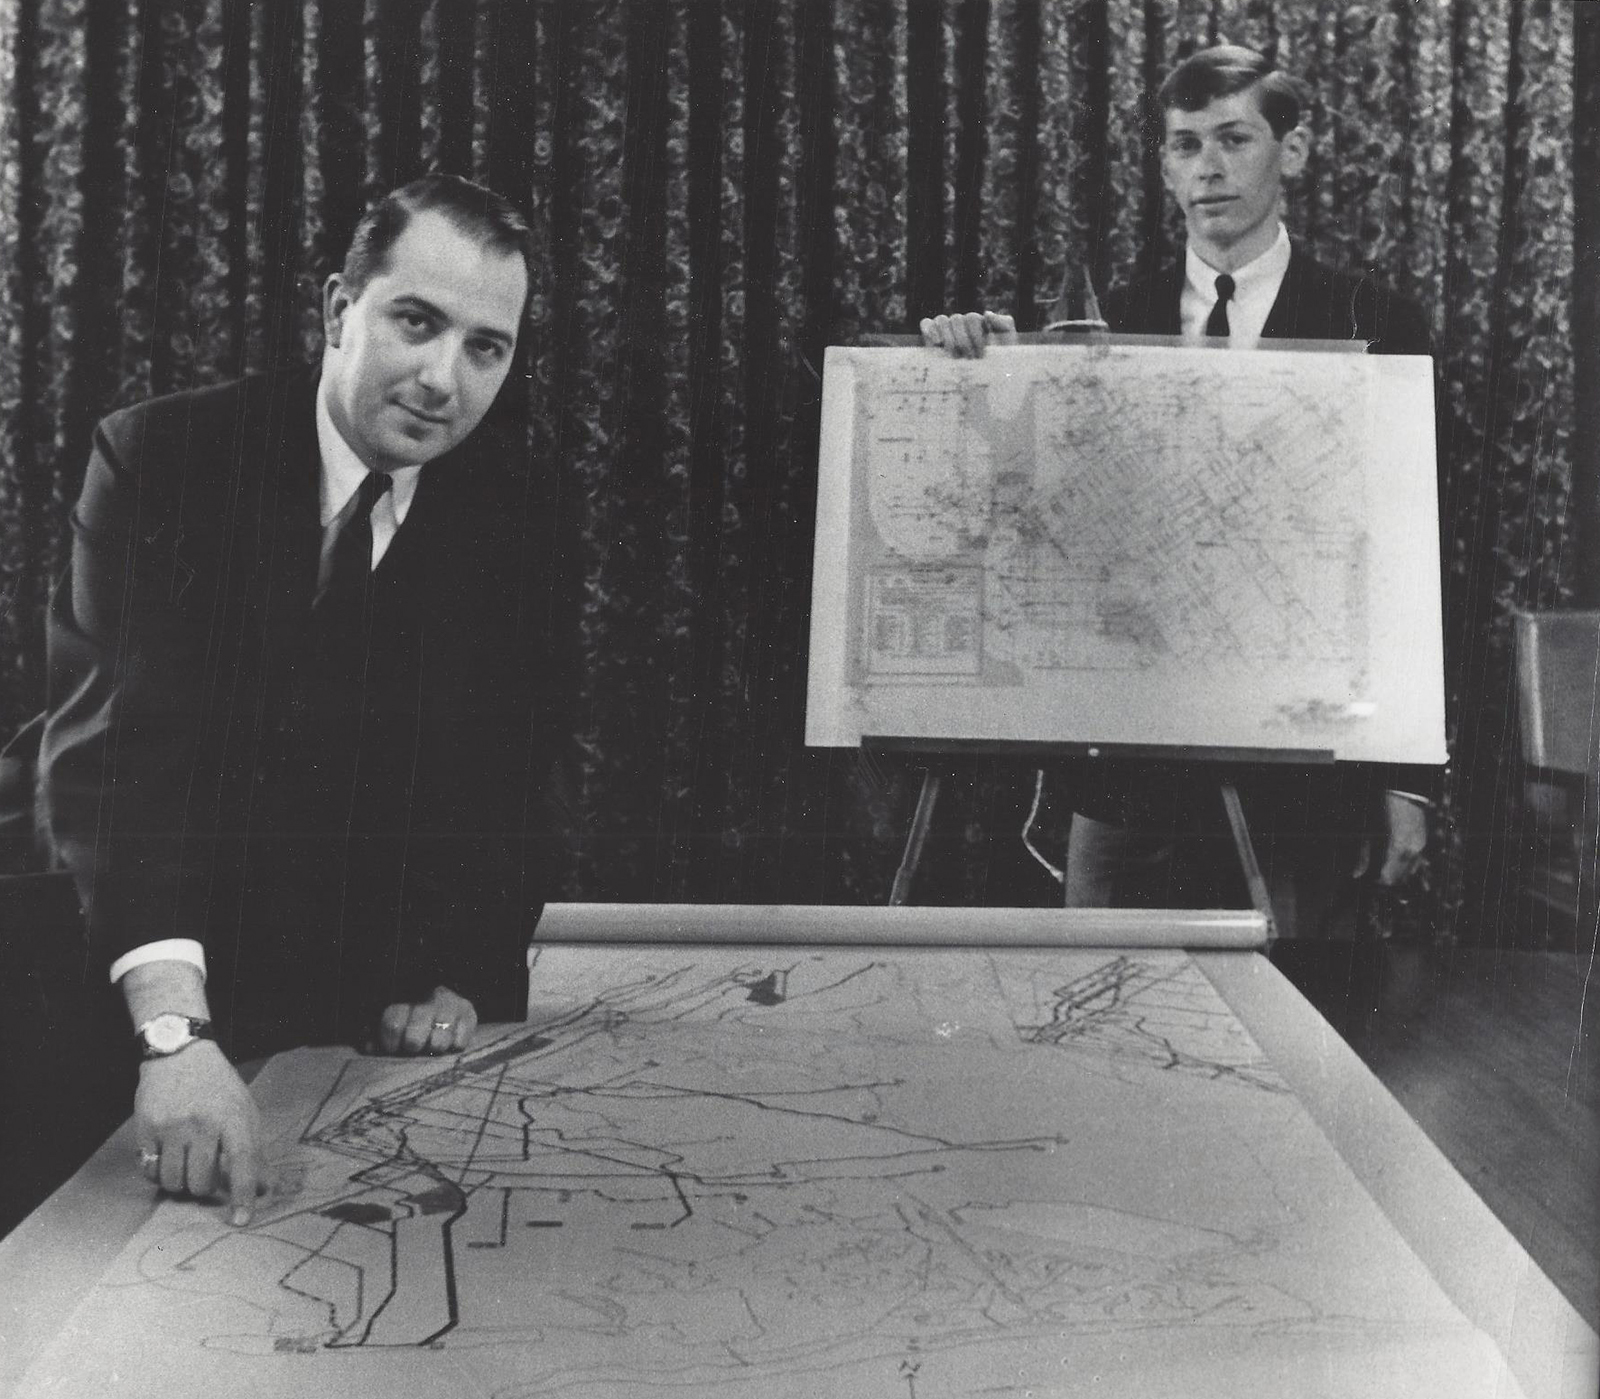 Raleigh D’Adamo (l.) and Harris M. Schectman (r.), 1964 Photograph by Jill Krementz